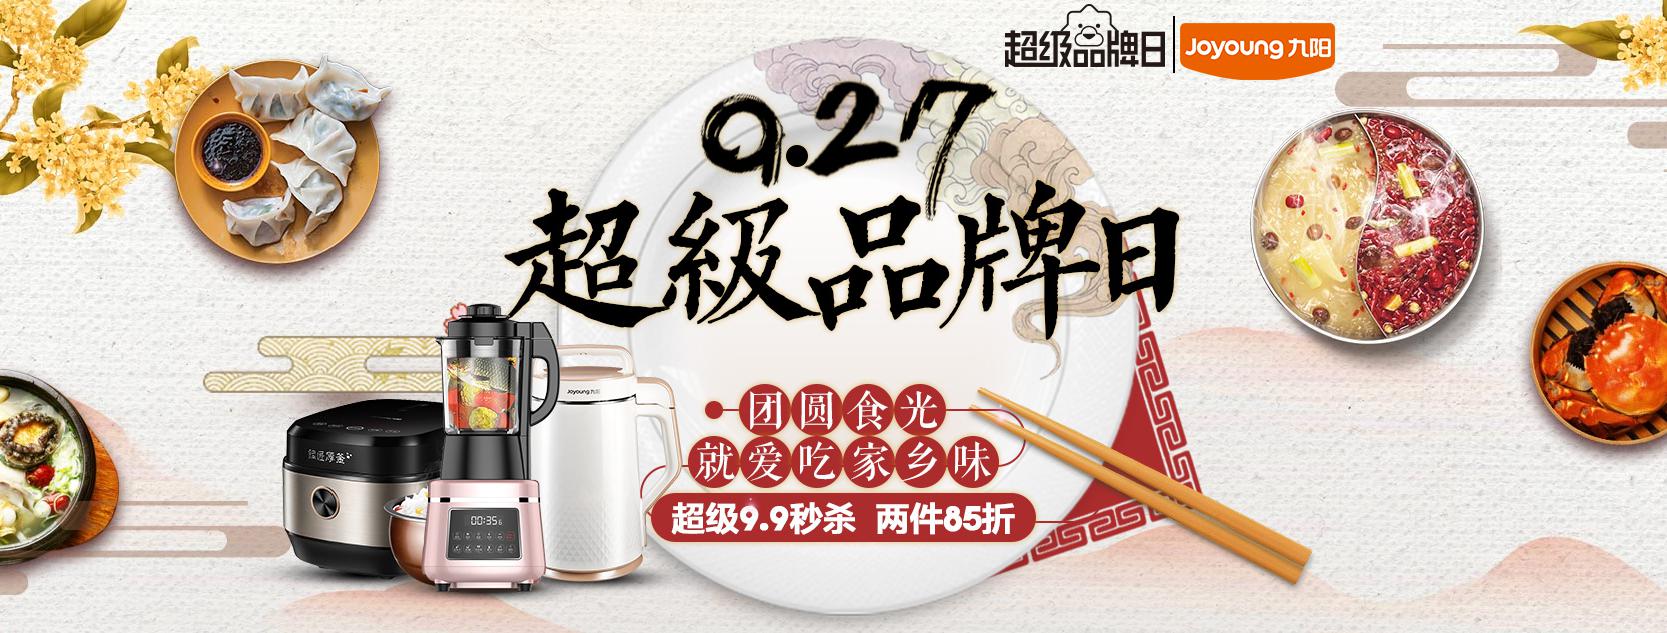 苏宁易购 九阳超级品牌日 厨电产品